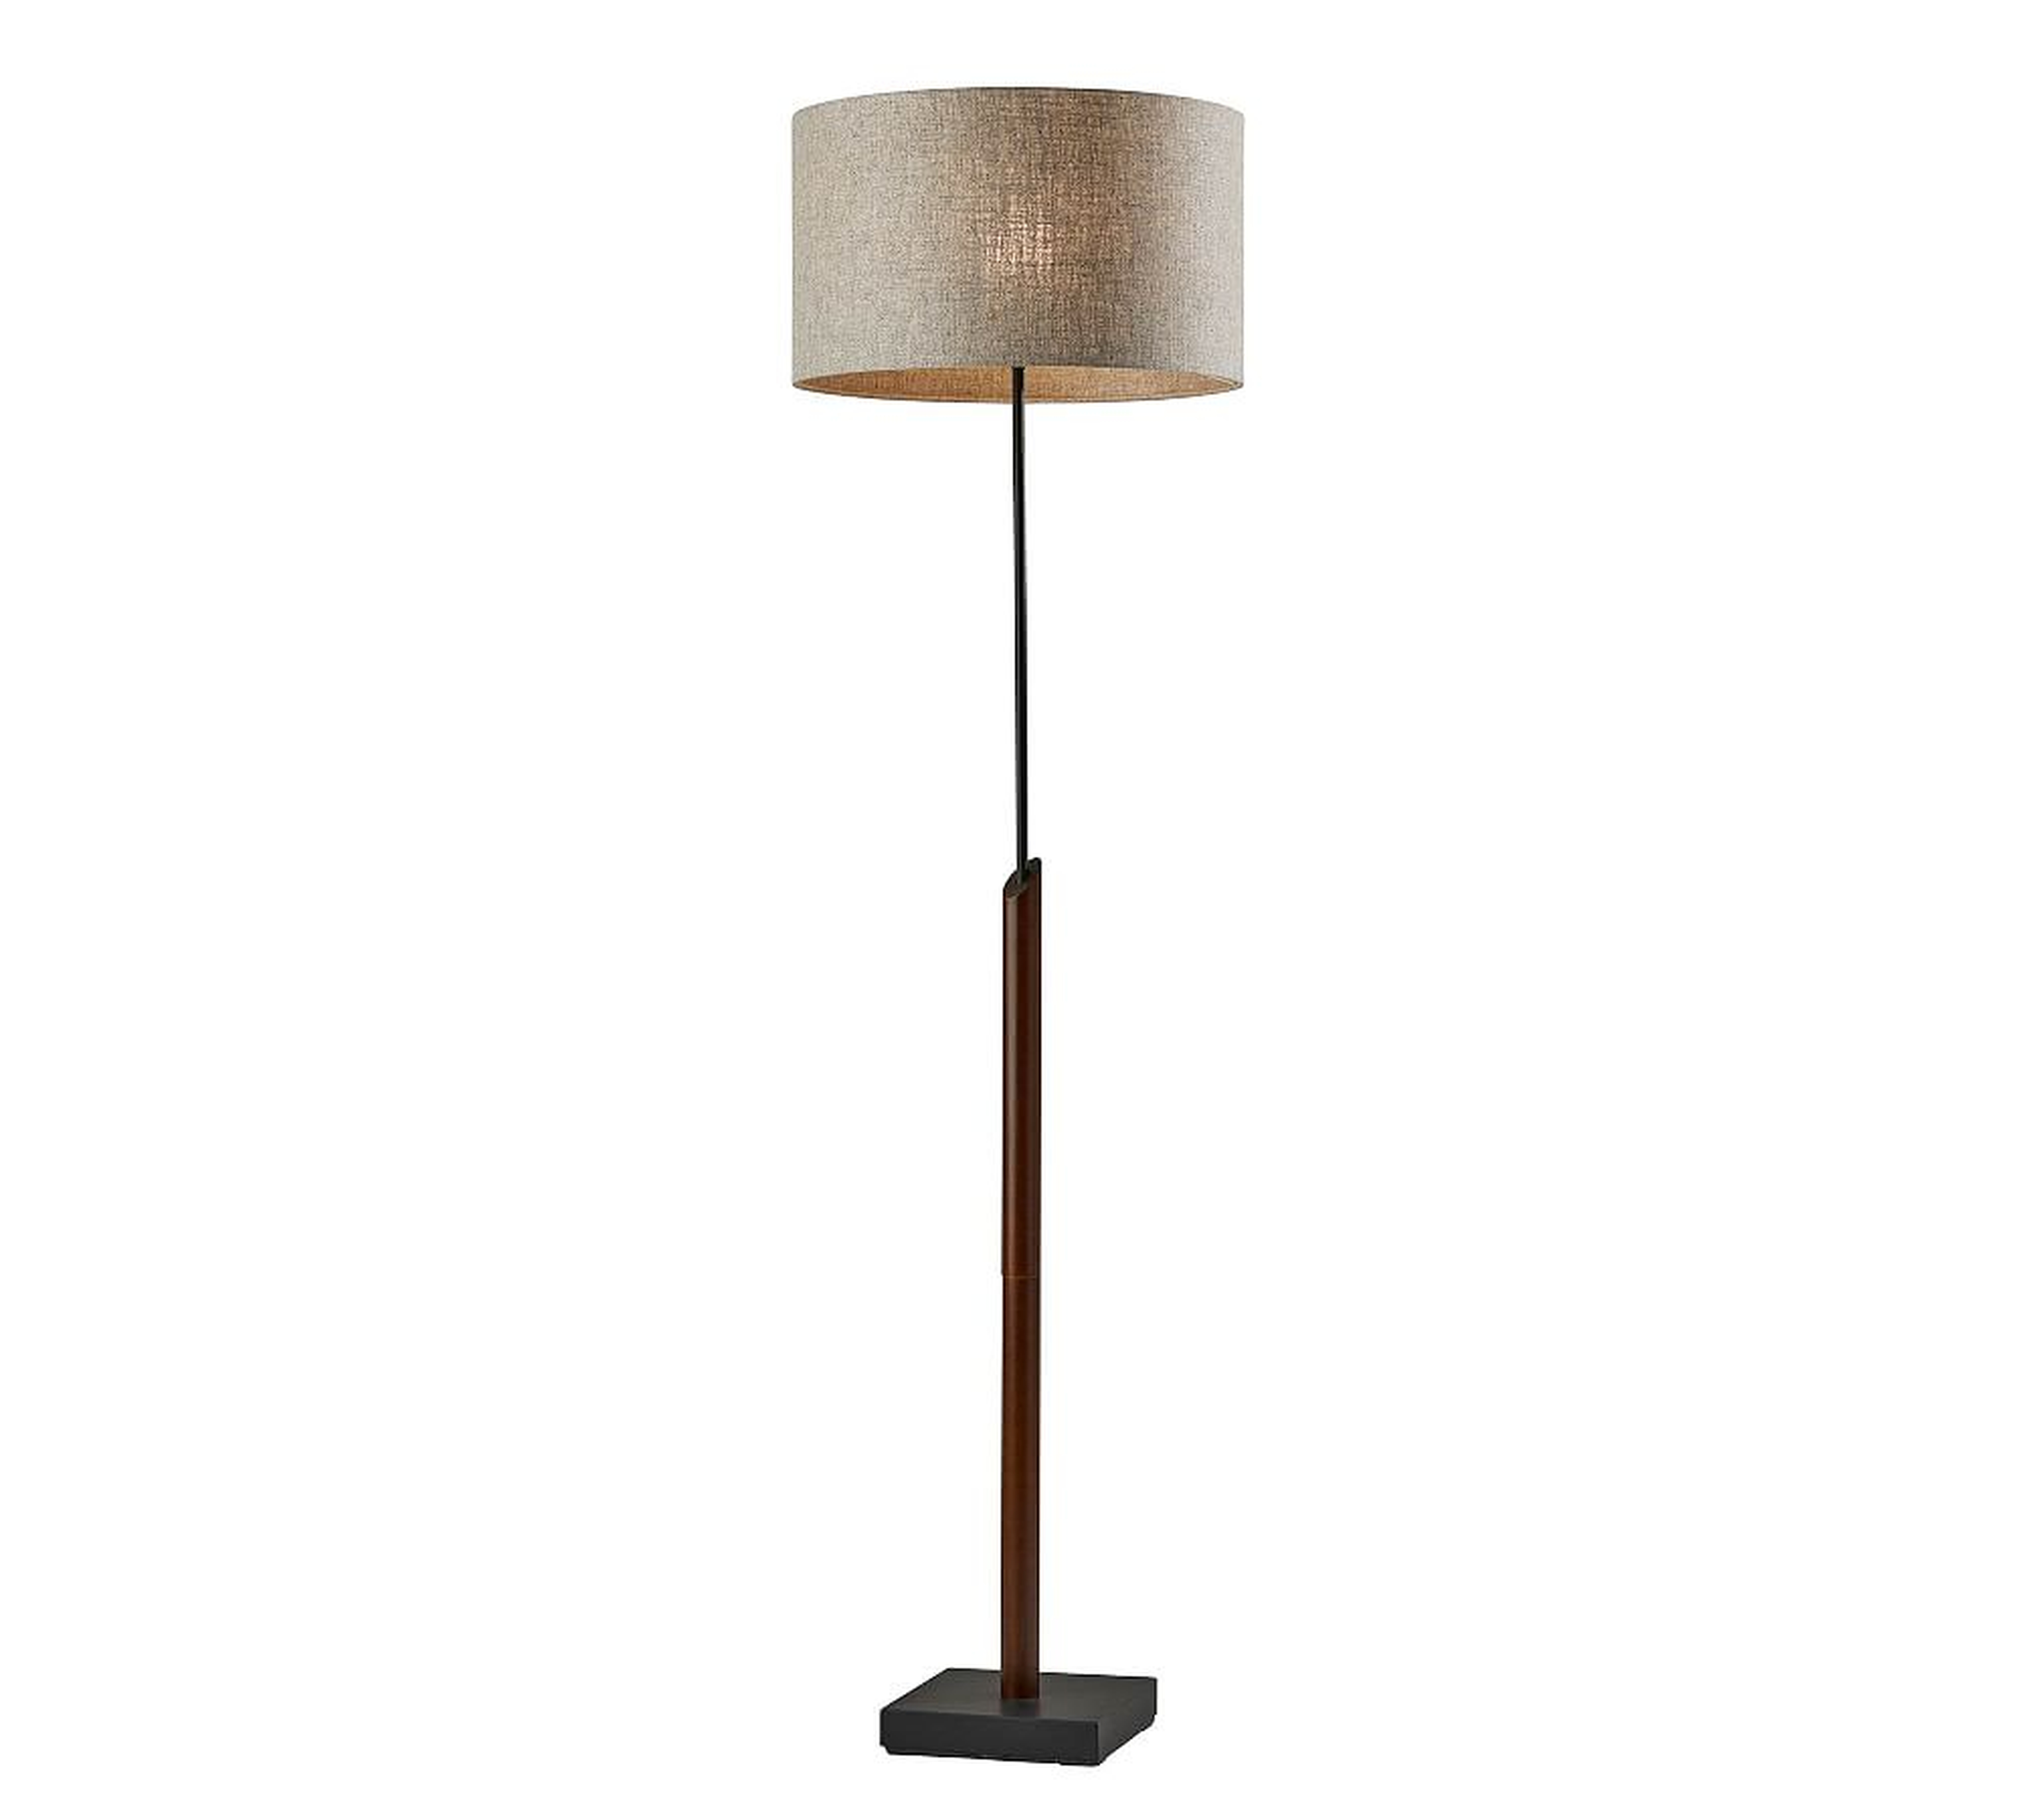 Cornelius Wood Floor Lamp, Black & Walnut - Pottery Barn